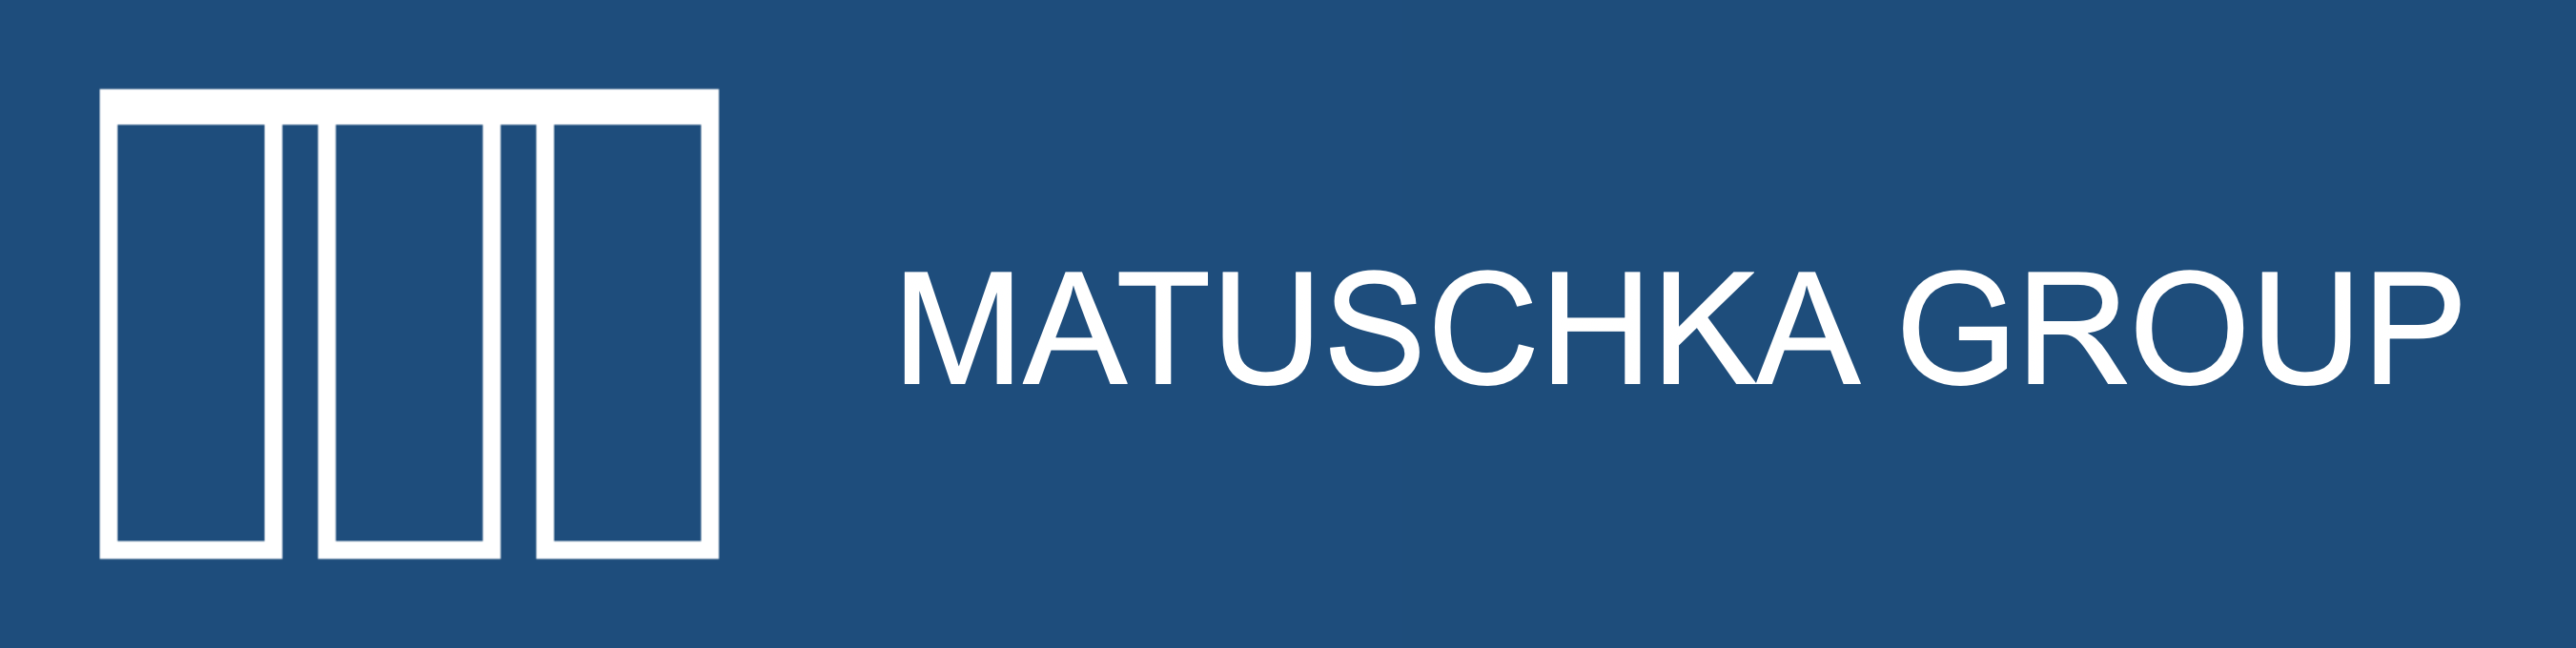 Matuschka Group